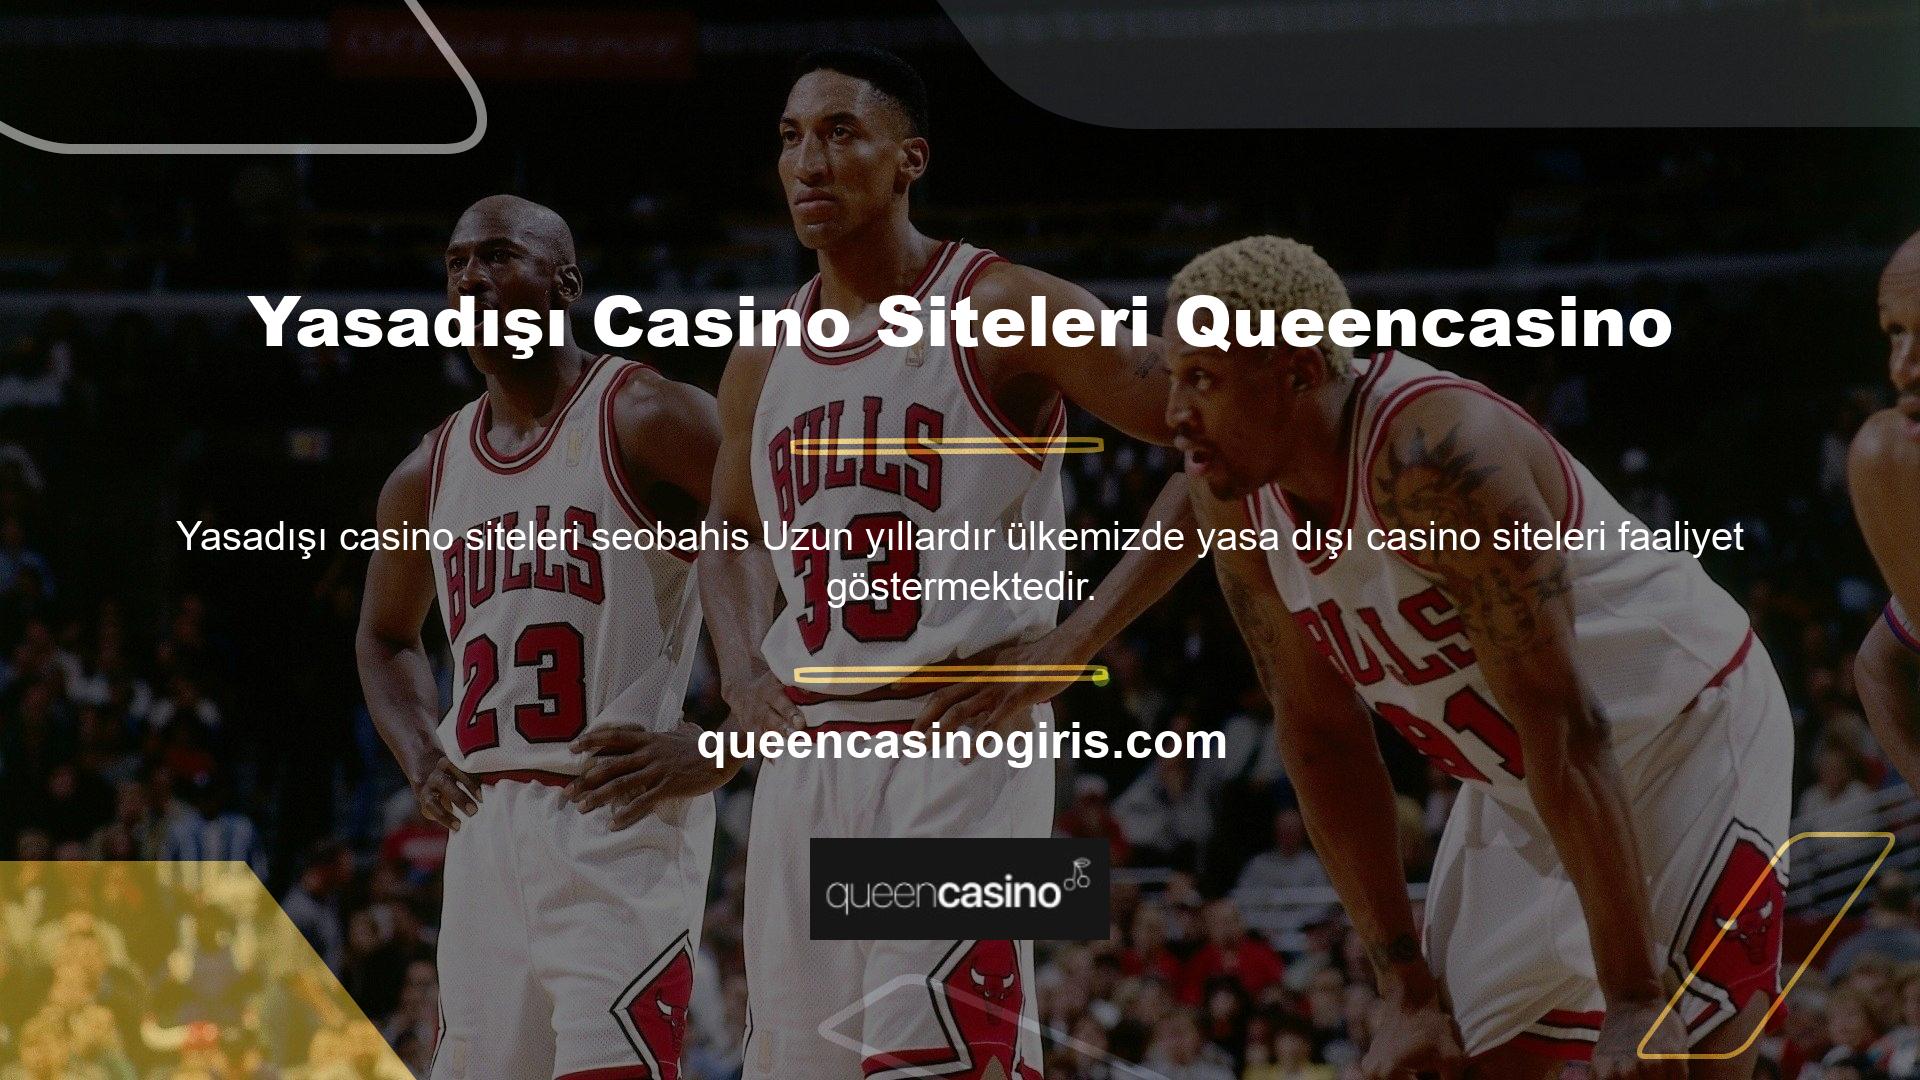 Yasadışı casino siteleri queencasino